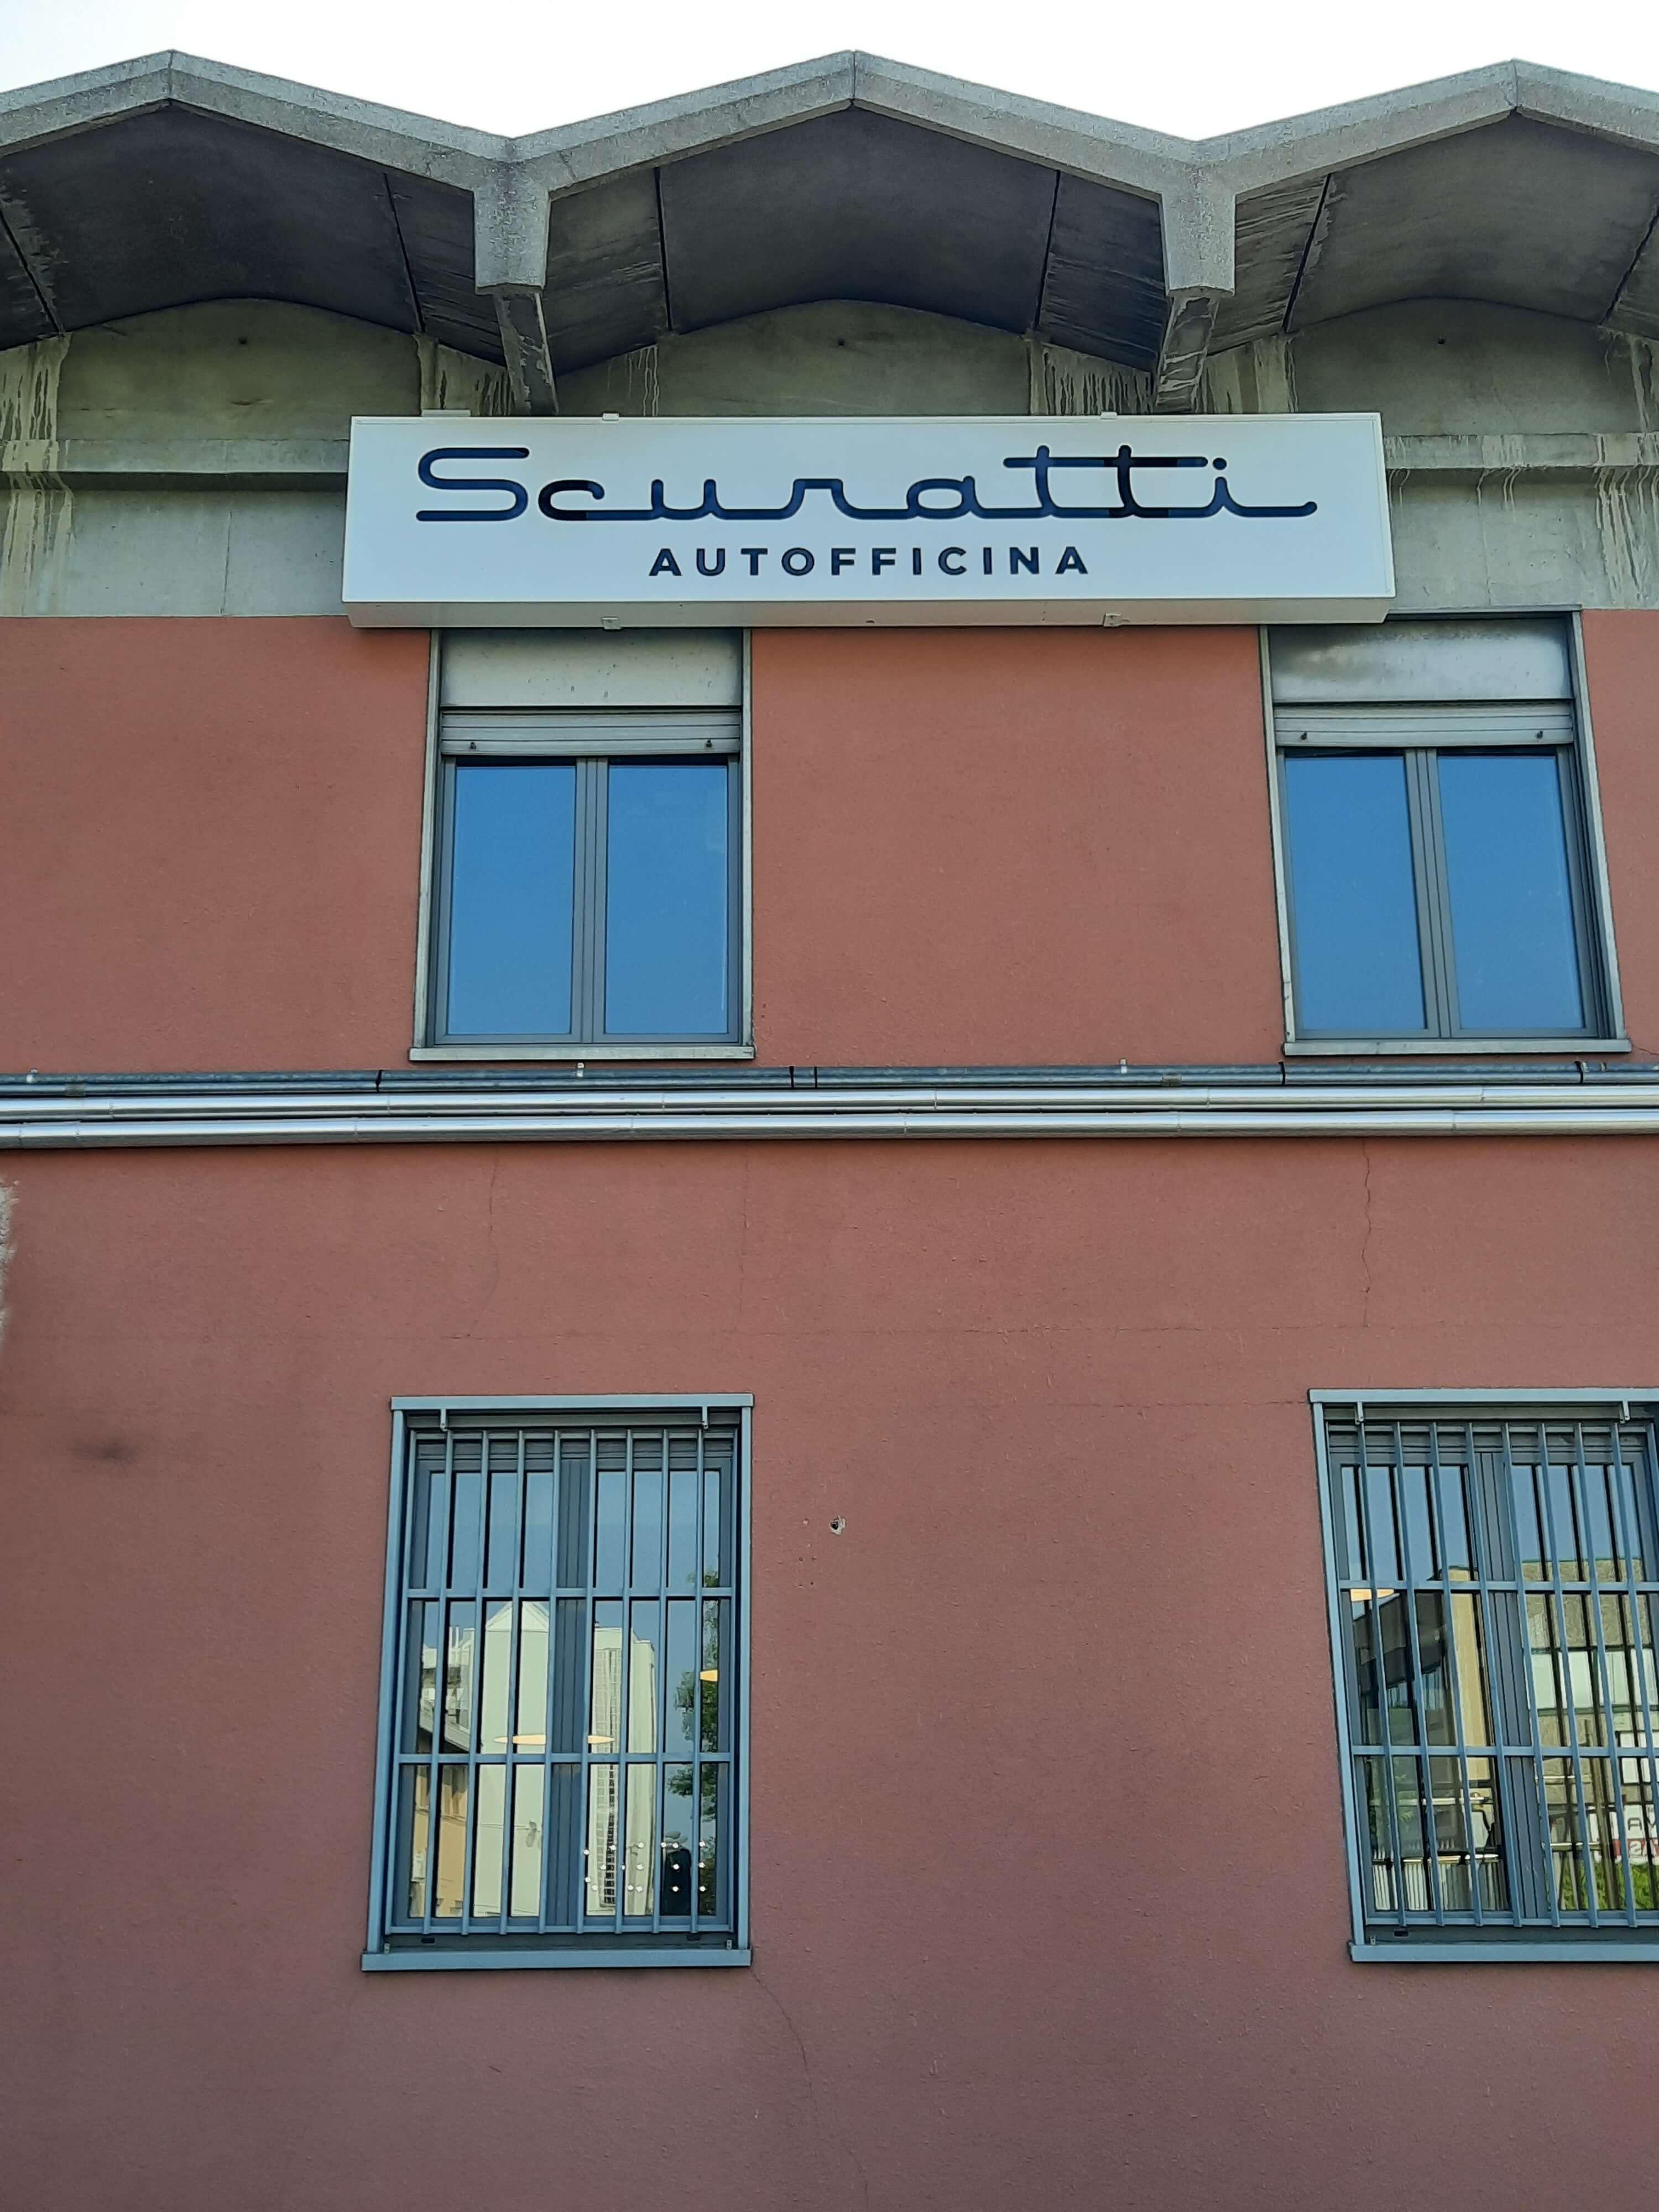 Scuratti service _ Nova Milanese (MI)